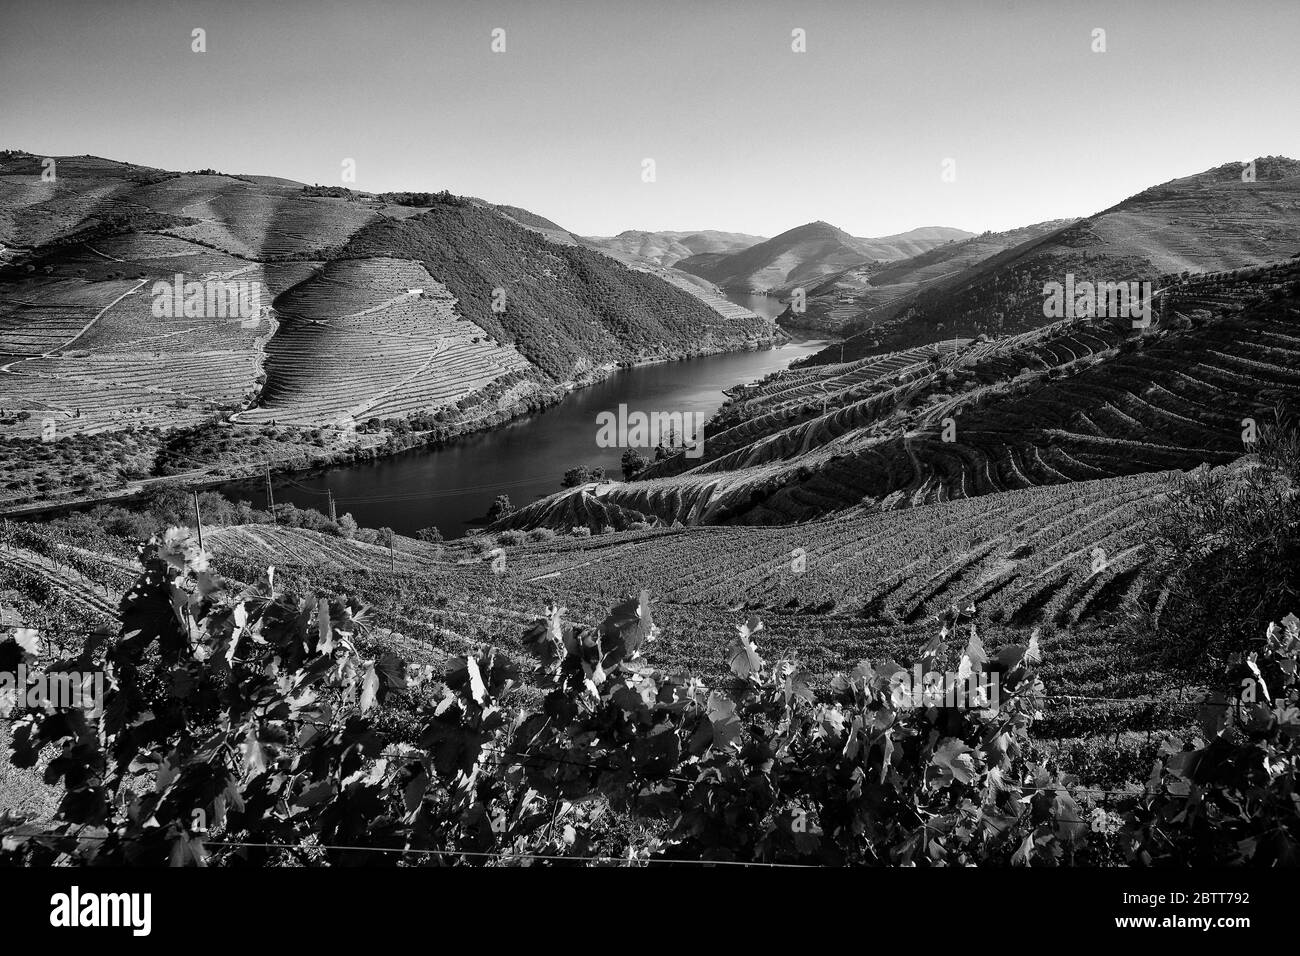 La valle del fiume Douro, nel nord del Portogallo, è il luogo di nascita di Port Wine. La regione è conosciuta per i suoi vigneti, i mandorli e gli ulivi. Foto Stock